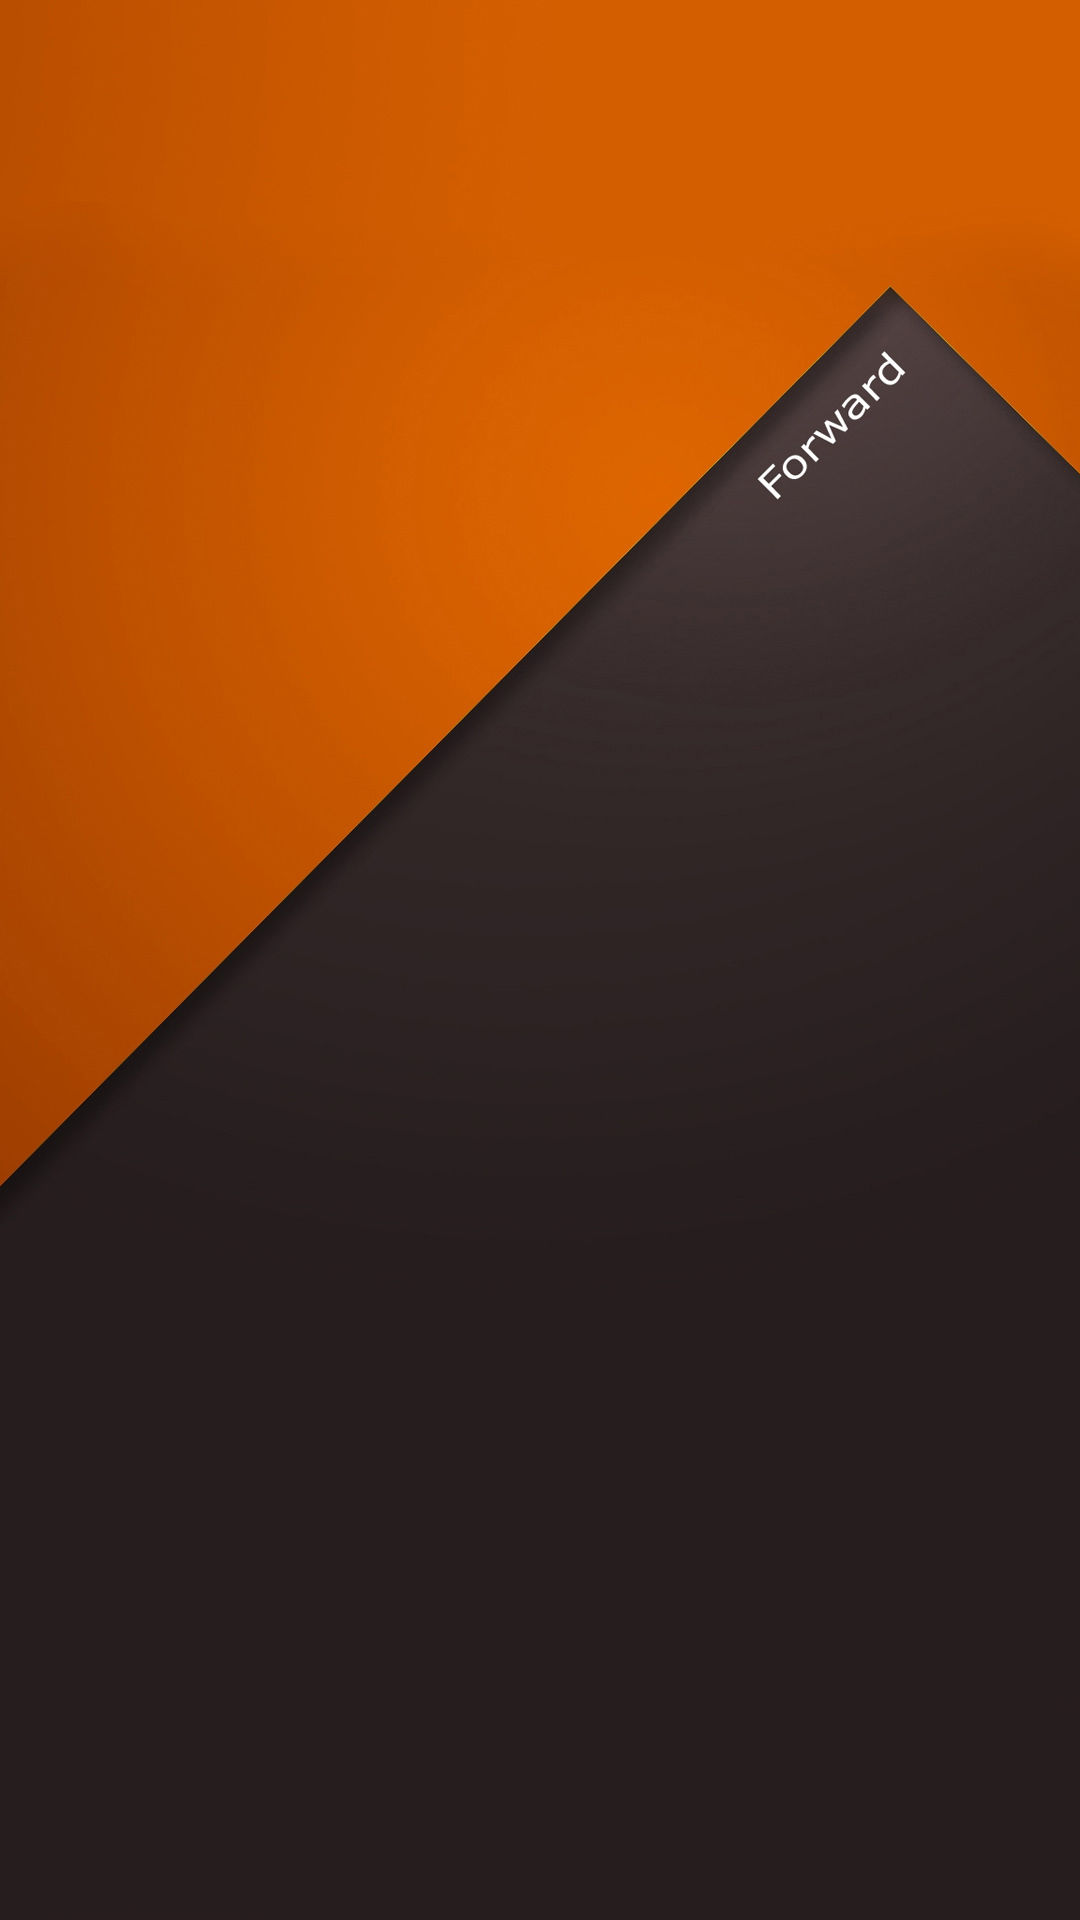 fond d'écran hd pour android 5 pouces,orange,jaune,marron,ciel,police de caractère